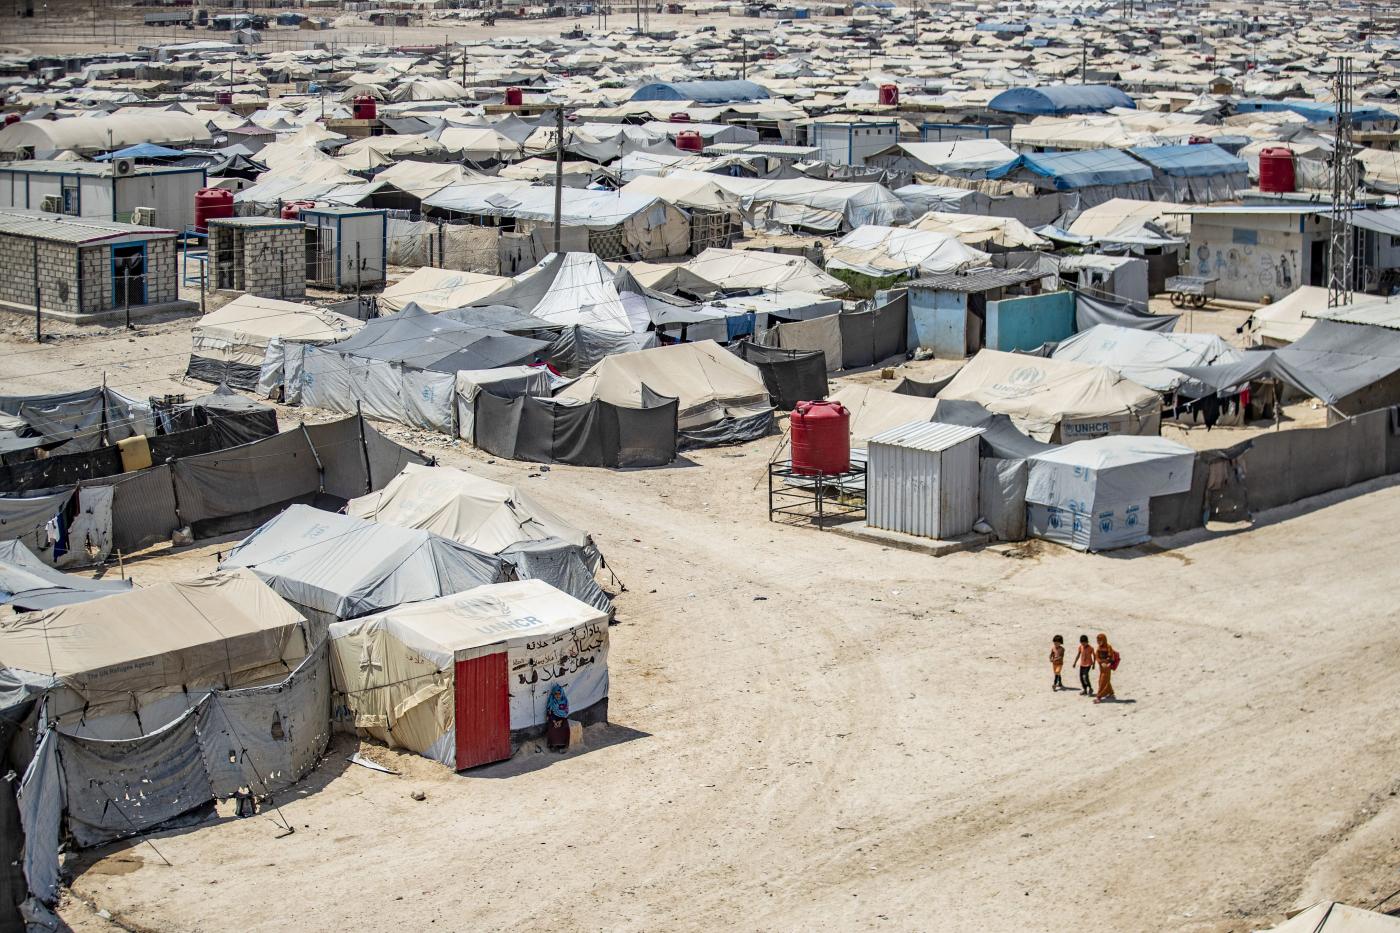 Σπίτια για Σύρους μετανάστες κατασκευάζει η Τουρκία